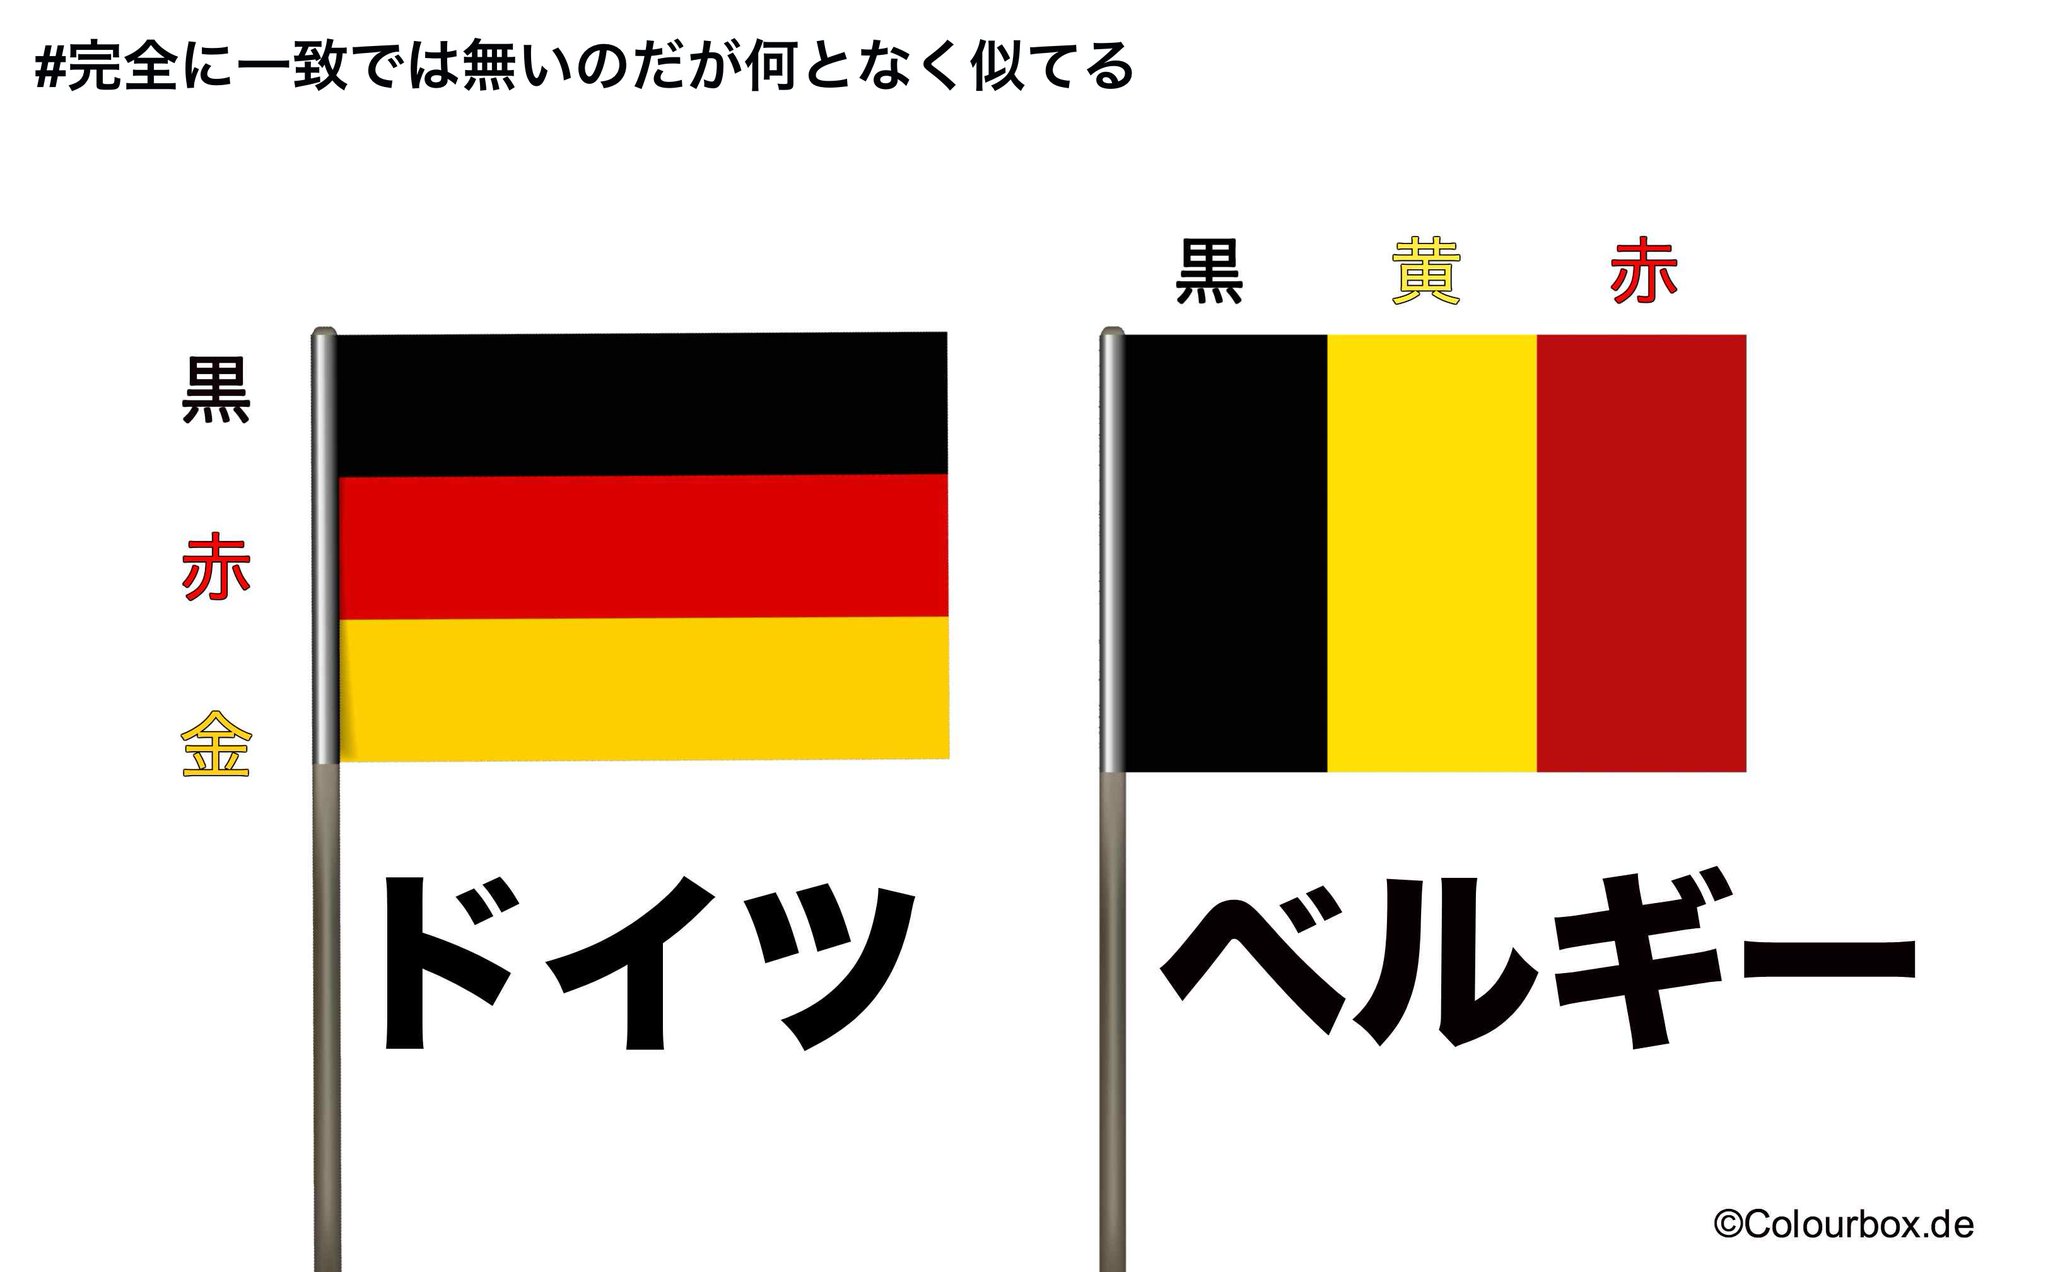 ドイツ大使館 完全に一致では無いのだが何となく似てる 黒赤金 どうみても金 ドイツの旗は 黄色ではない ベルギー大使館さん いつも巻き込んでごめんなさい